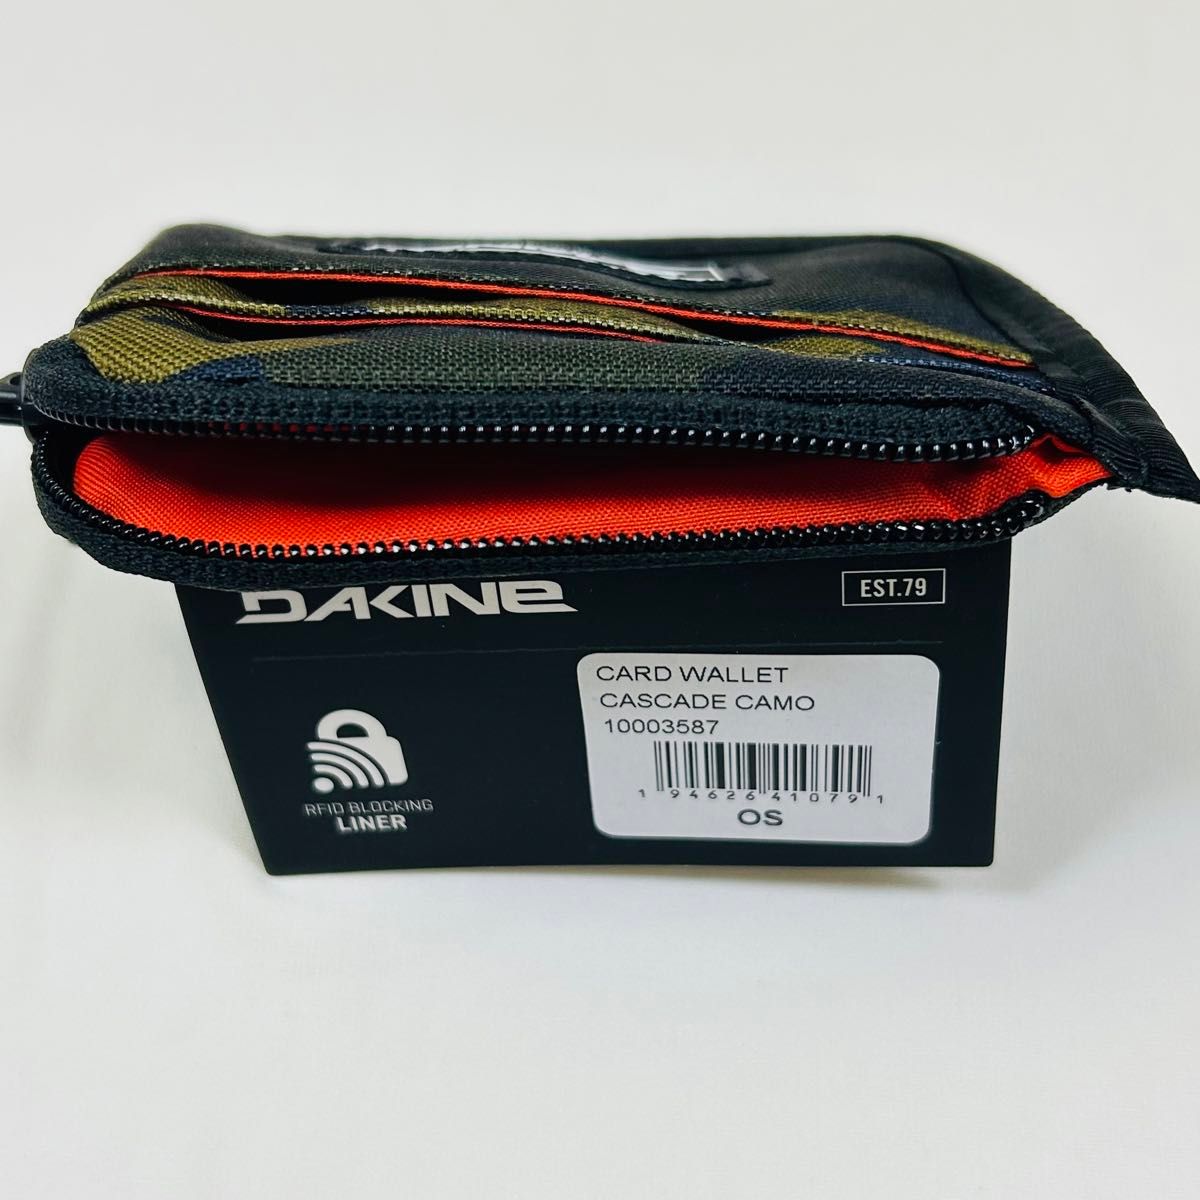 【海外輸入】Dakine Card Wallet ダカイン カードウォレット